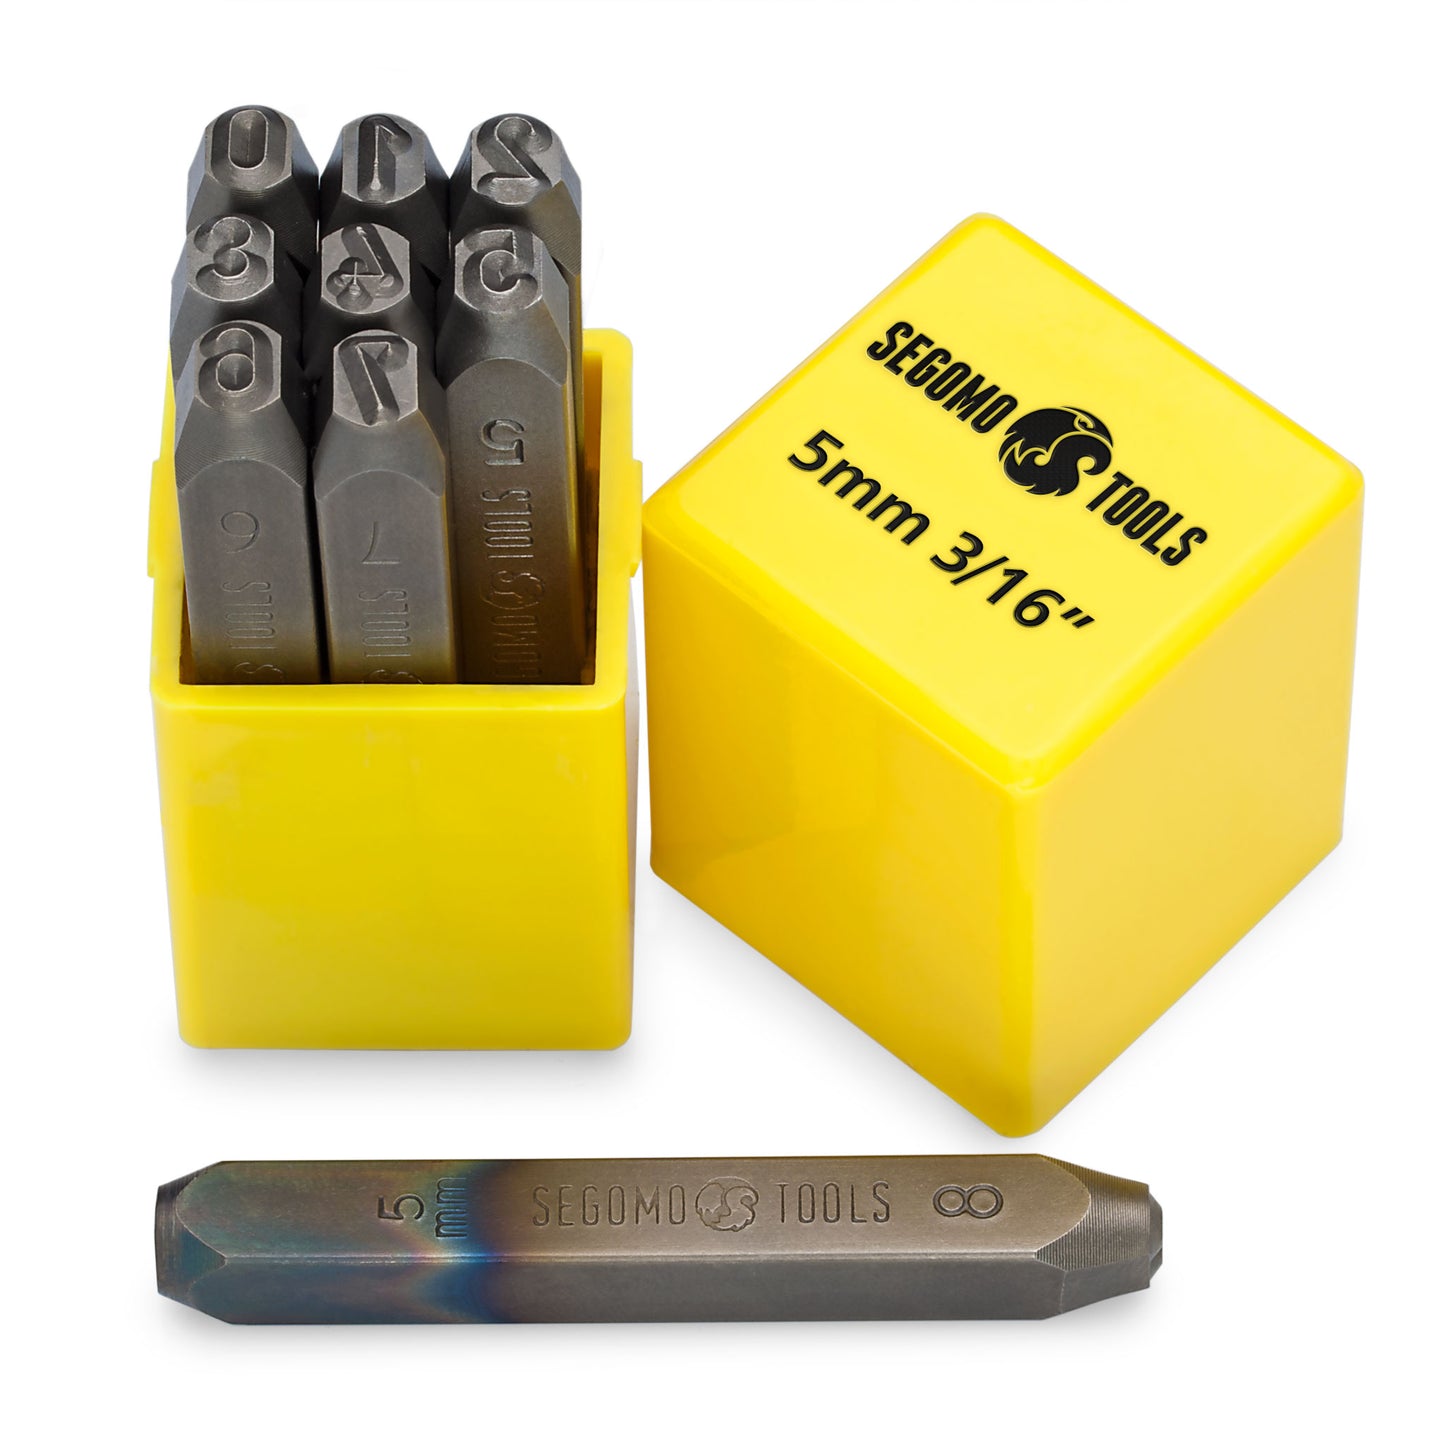 Segomo Tools Lot de 9 tampons de poinçonnage professionnels 5 mm 3/16" (tailles : 0-8) (pour cuir, bois, cuivre, laiton, aluminium, acier doux) – NUMBER316